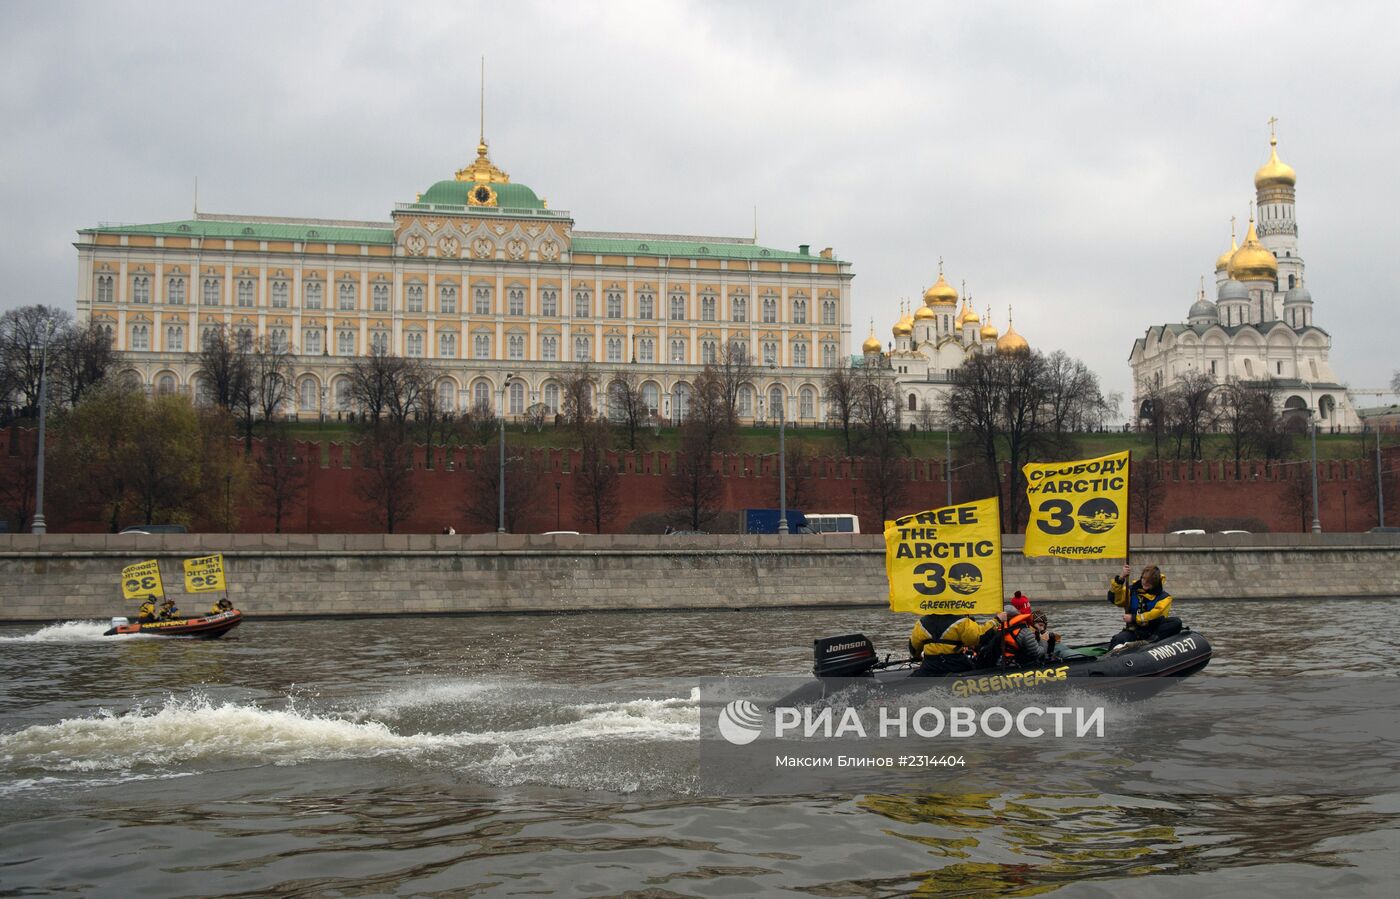 Акция Greenpeace в Москве